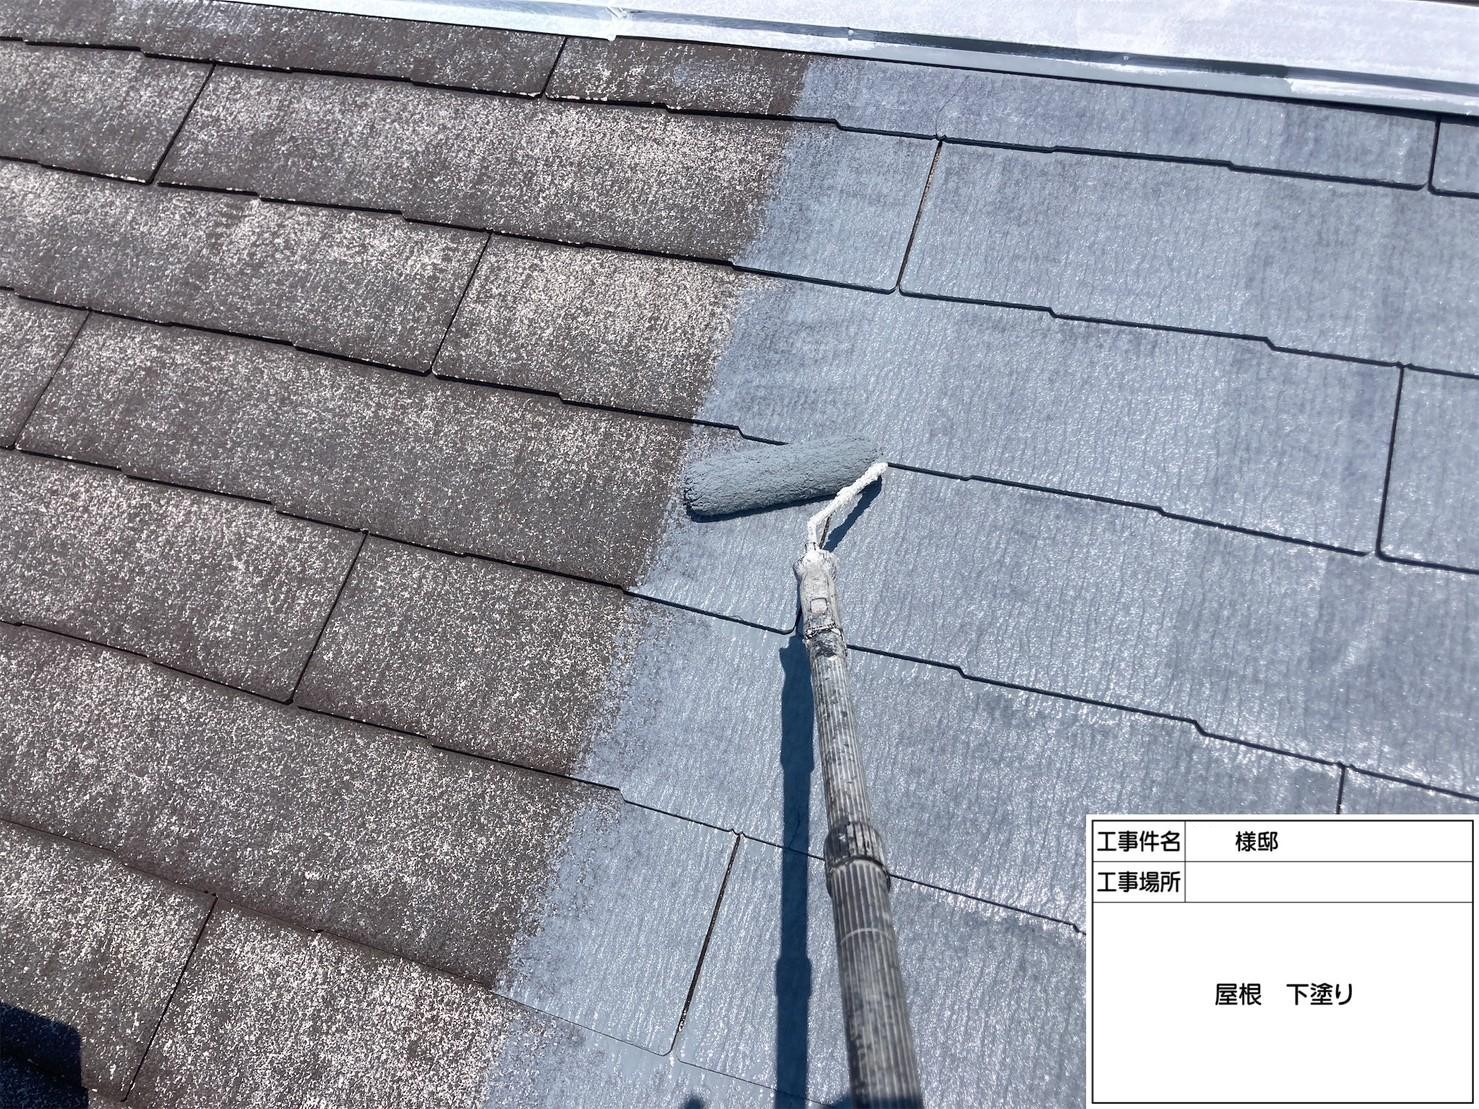 福岡県福岡市城南区田島のM様邸で新築時の色を再現する外壁塗装と屋根塗装工事を行いました。5/26完成です。【ホームページより】